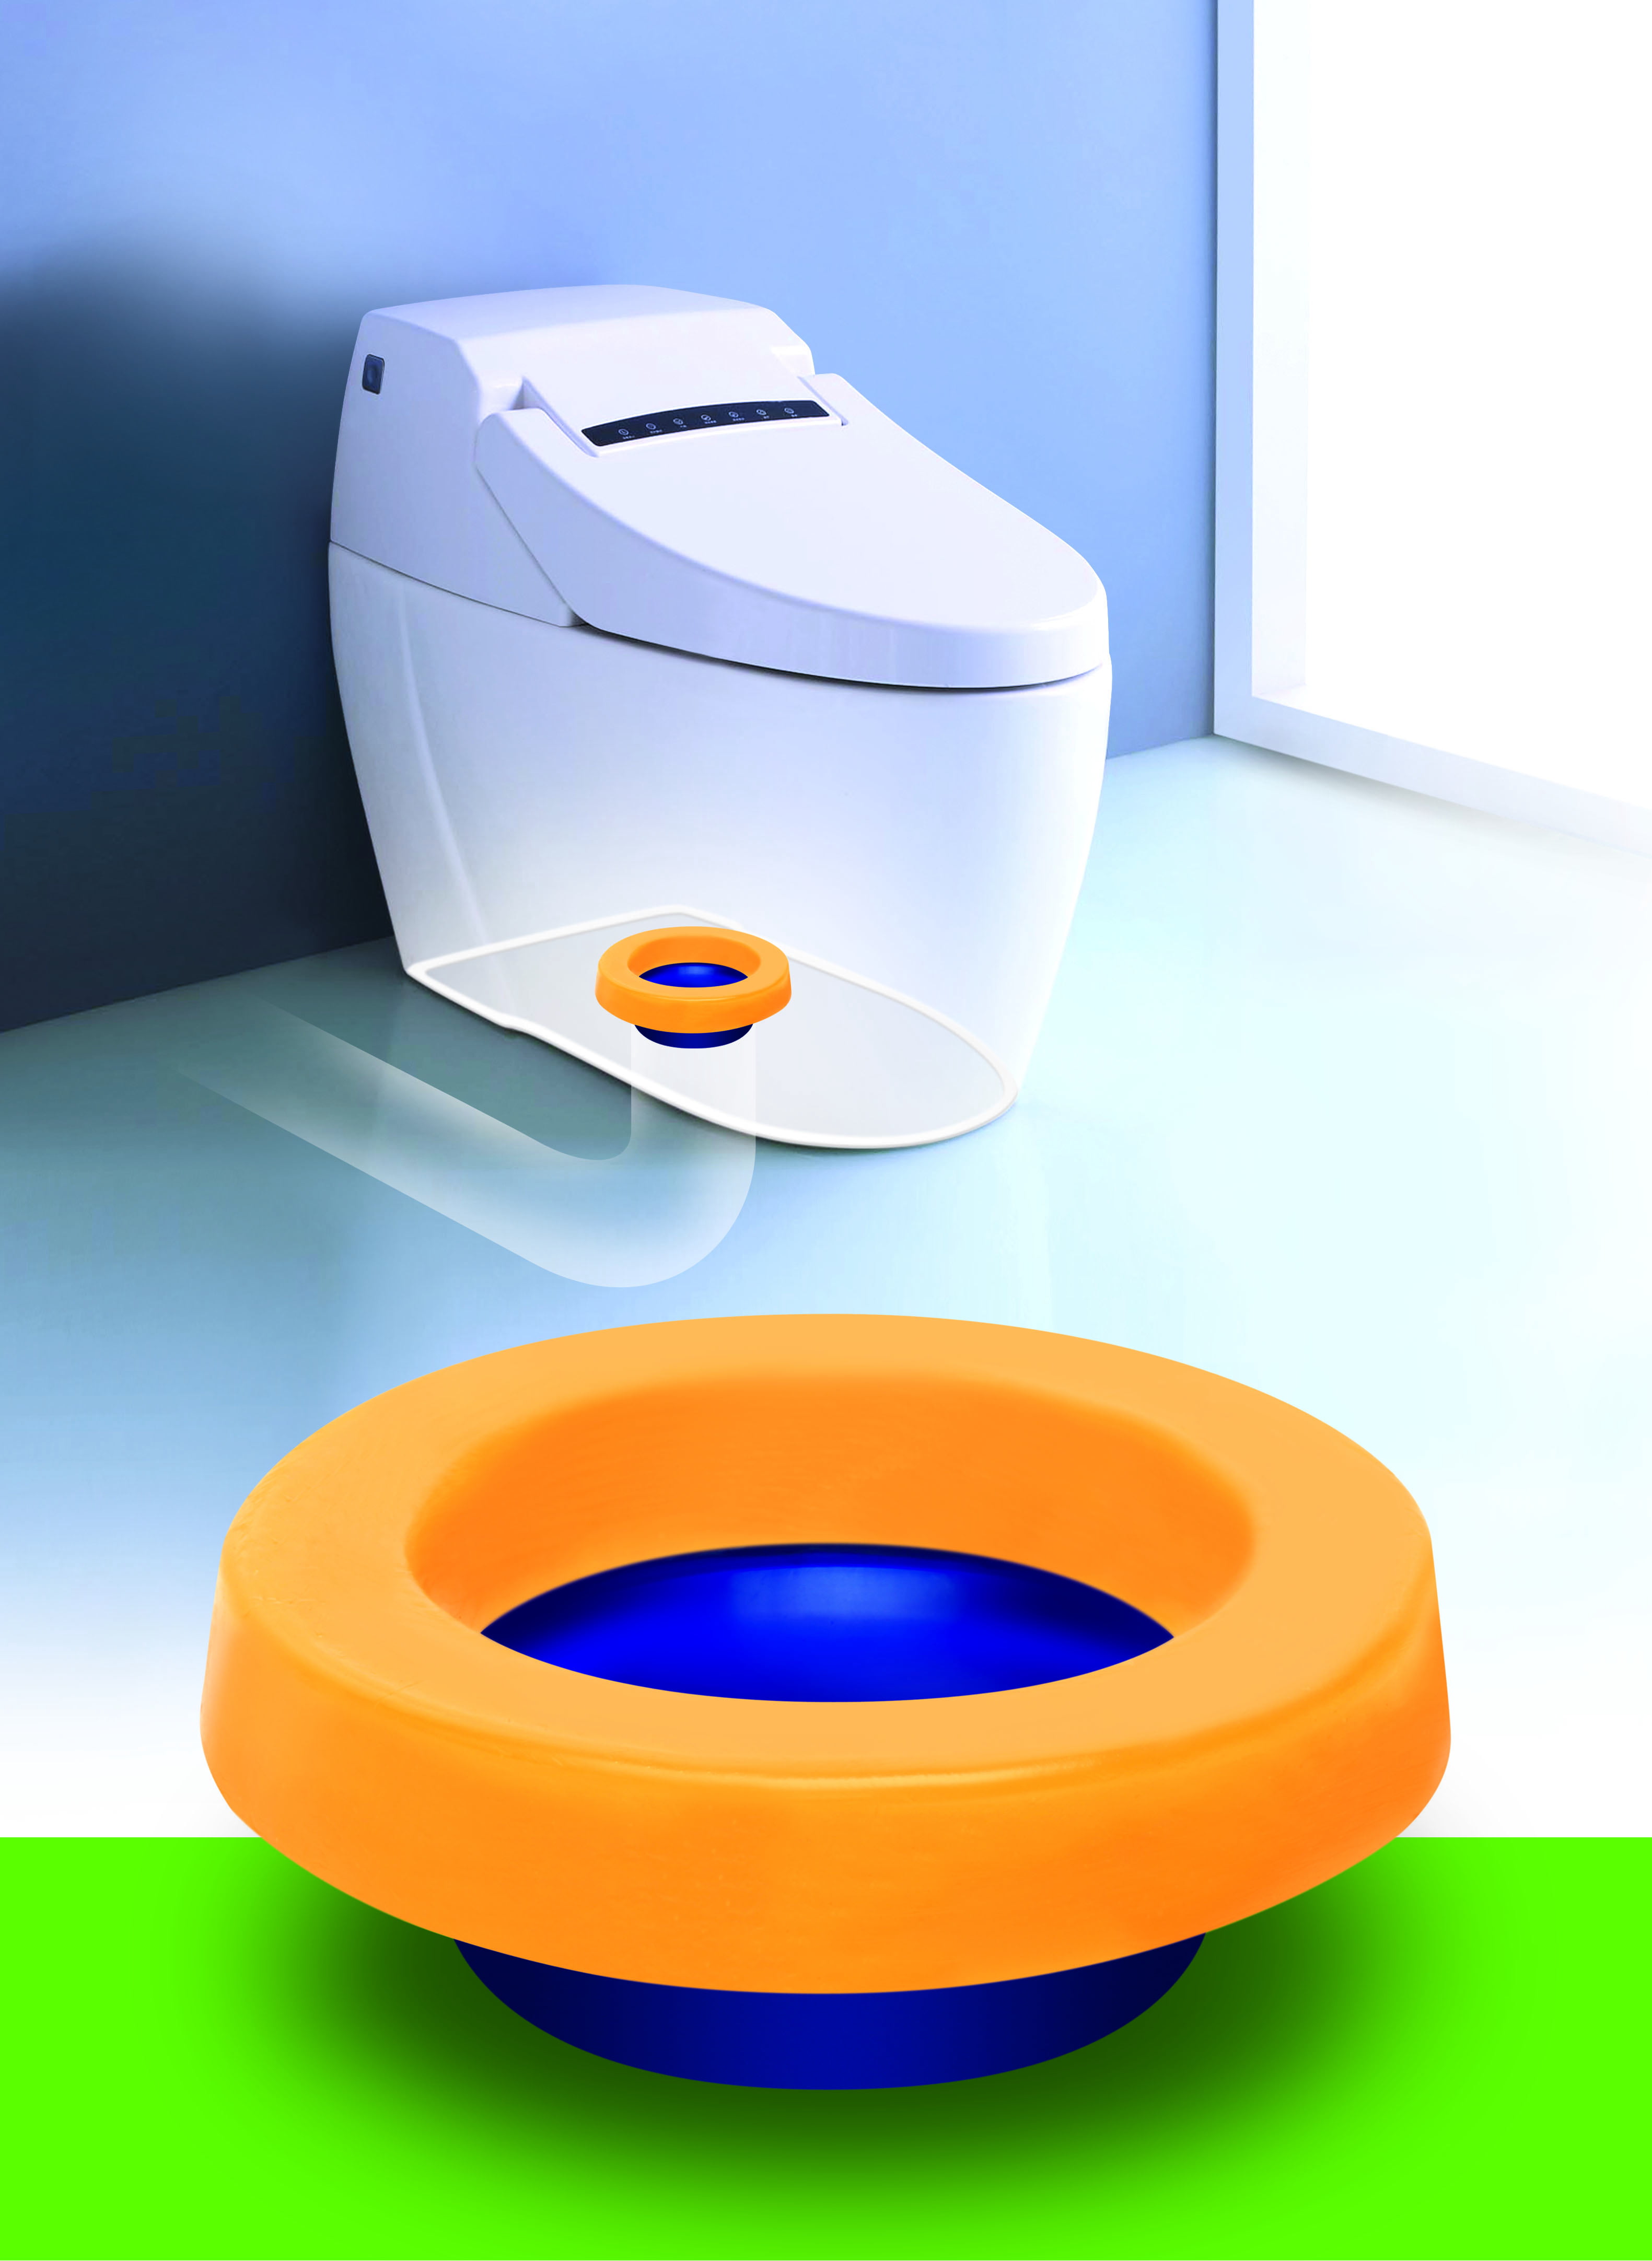 27x27mm Plastic Toilet Seat Hinge Bolt Screws Washers Kits F Repair w/ Nuts Set 